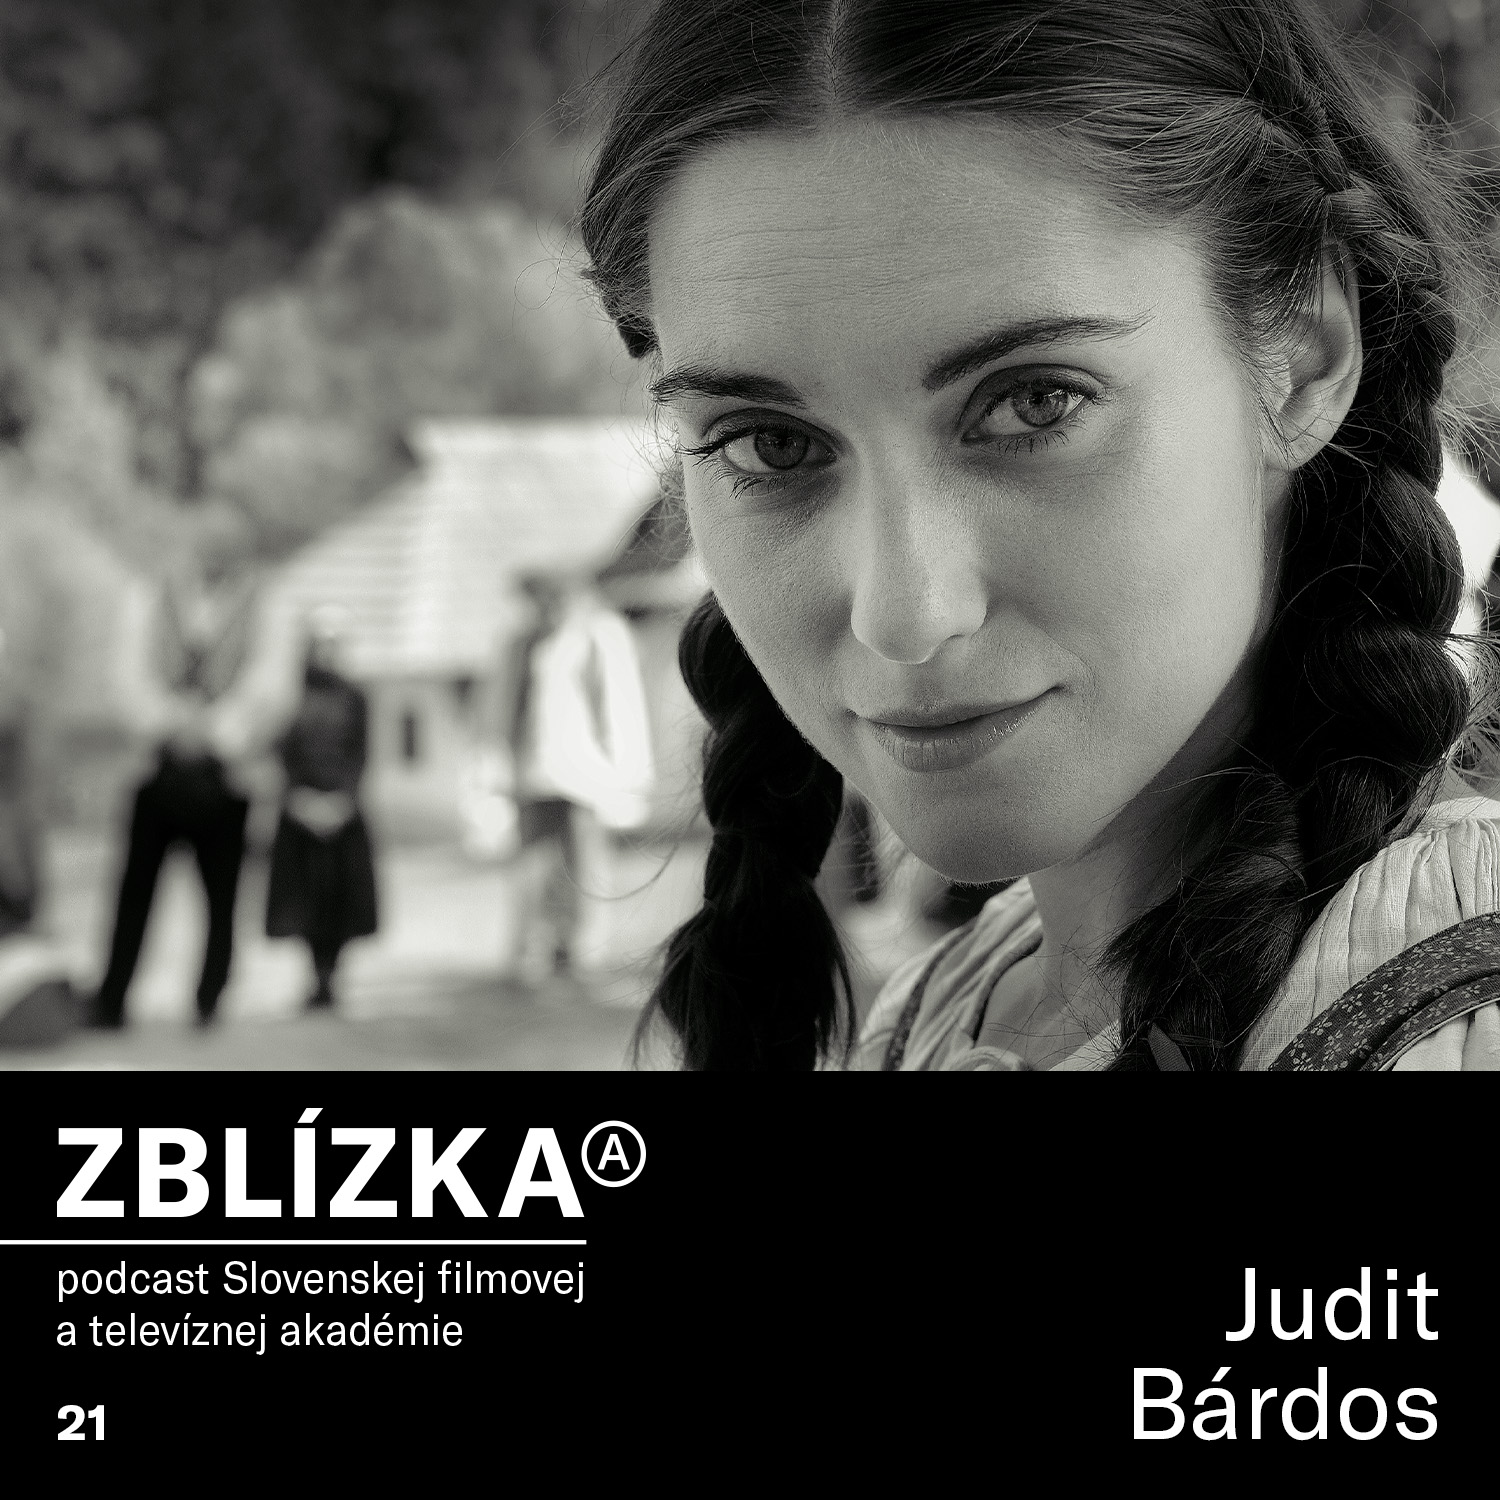 Judit Bárdos: Baví ma, keď sa môžem skryť za nejakú postavu